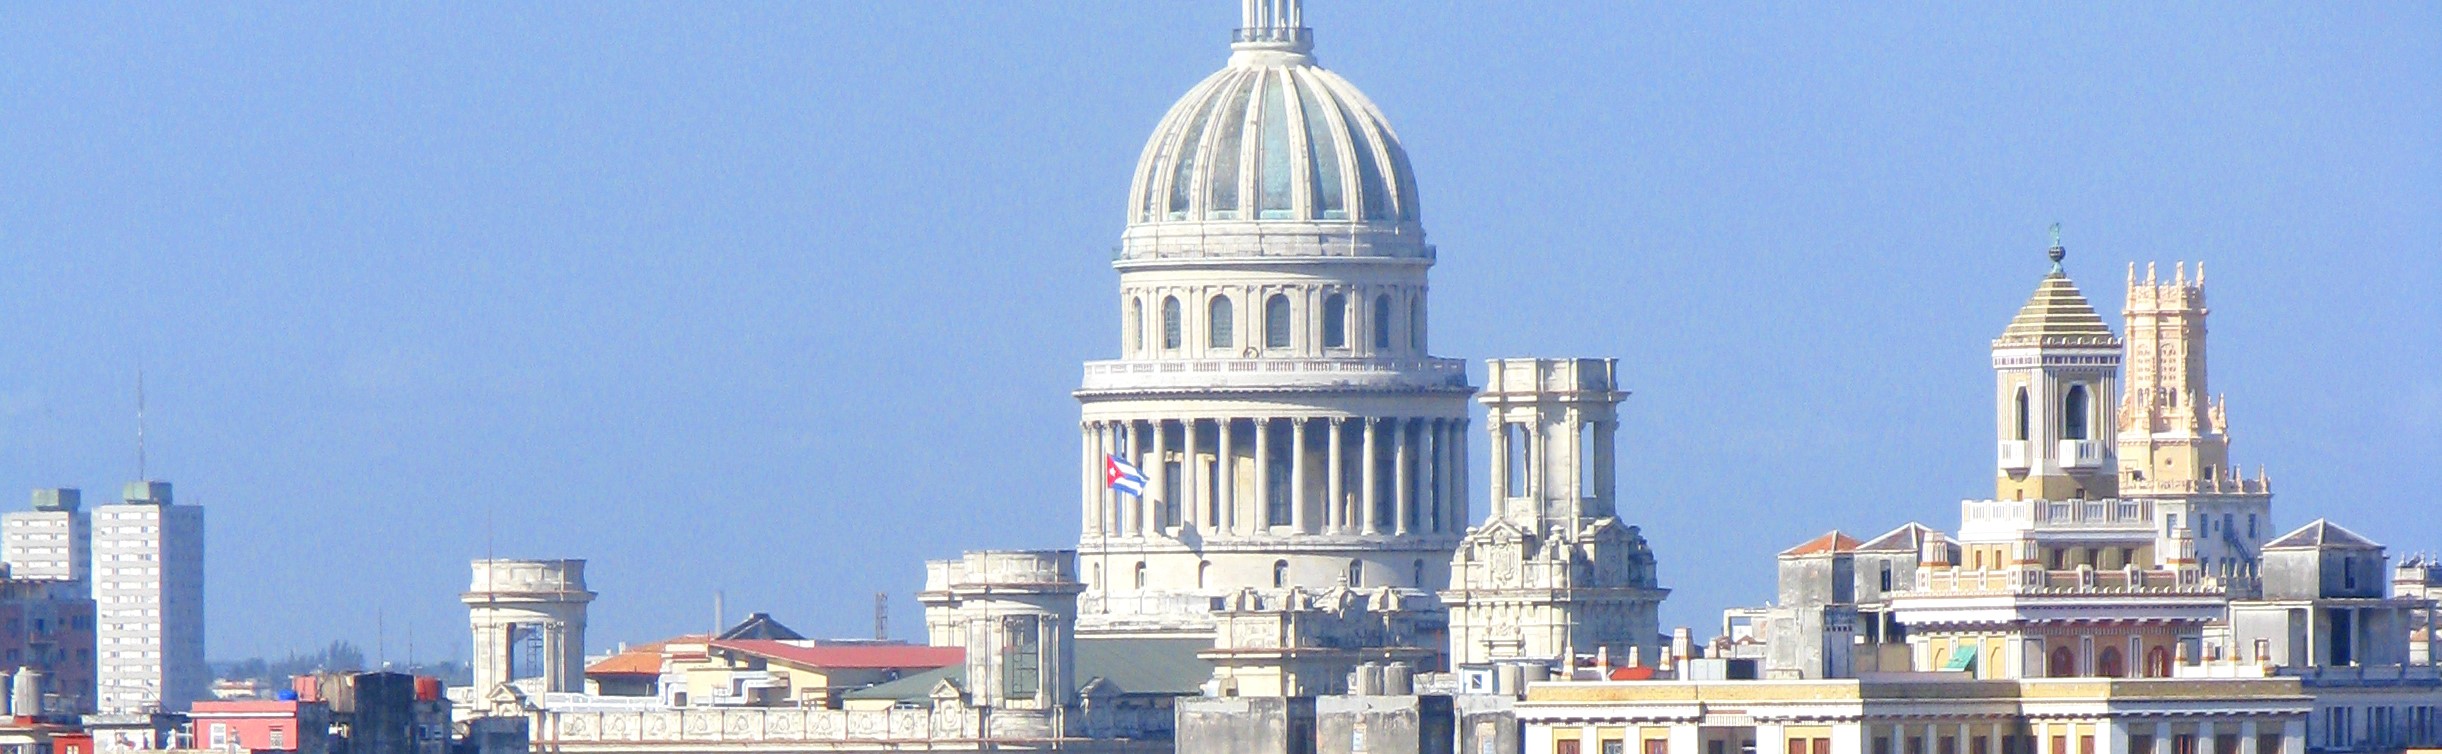 På en reise til Cuba ser du landets vakre hovedstad Havanna